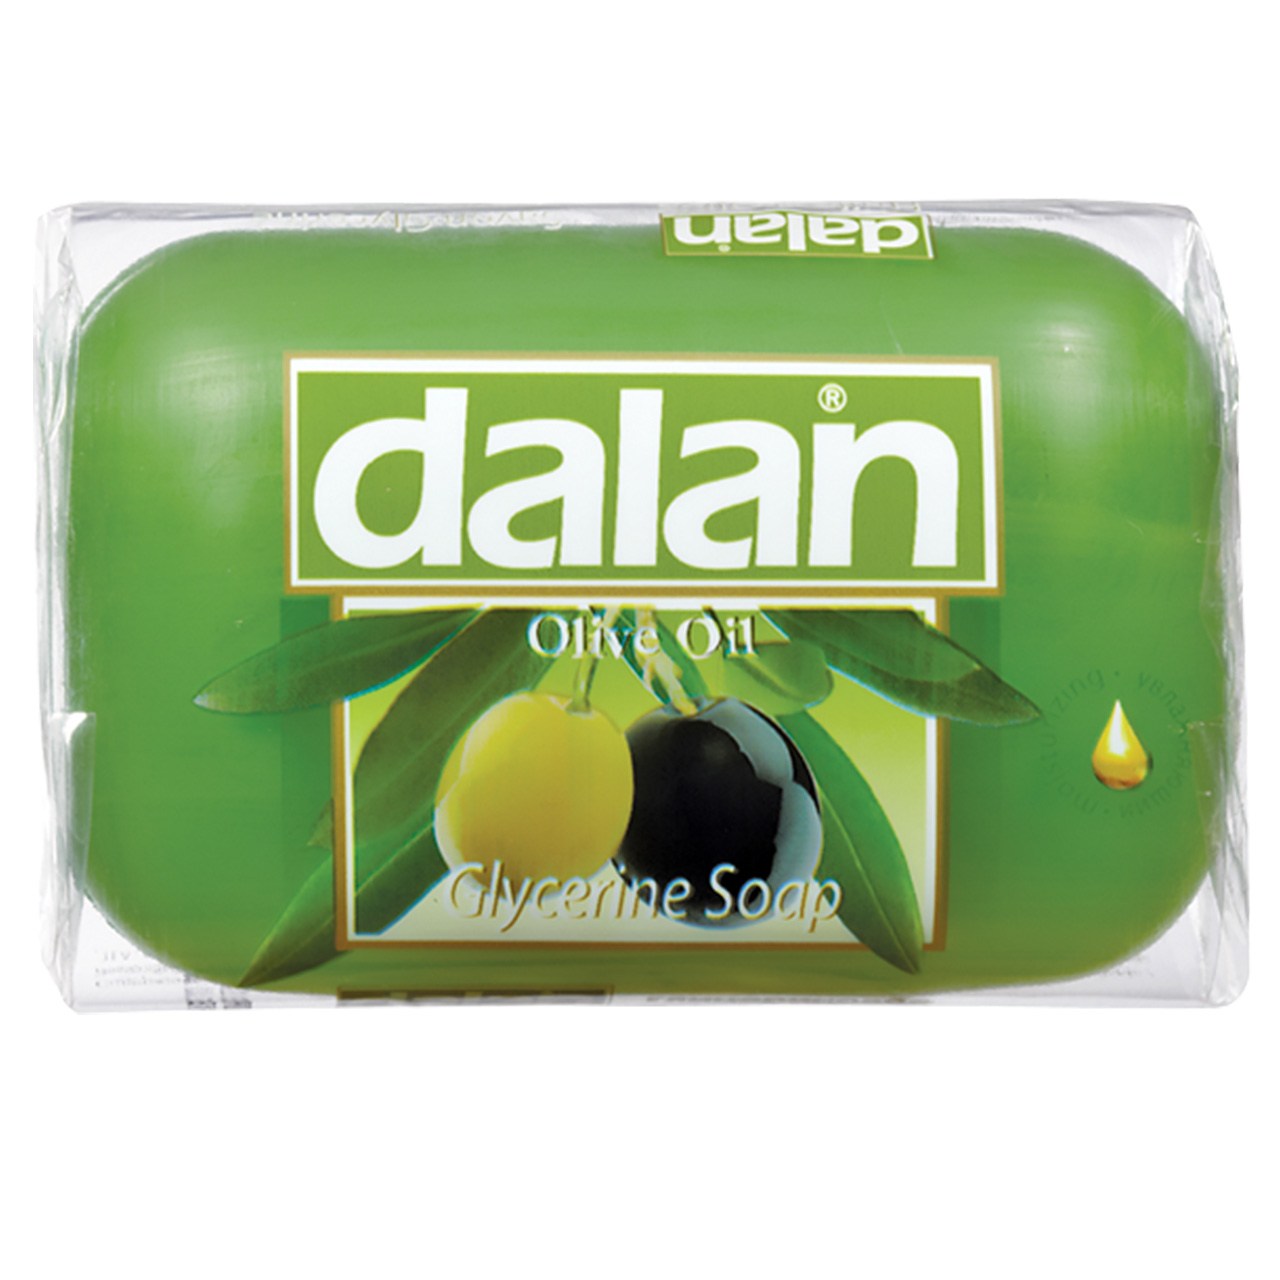 صابون گلیسیرین دالان مدل Olive Oil مقدار 100 گرم